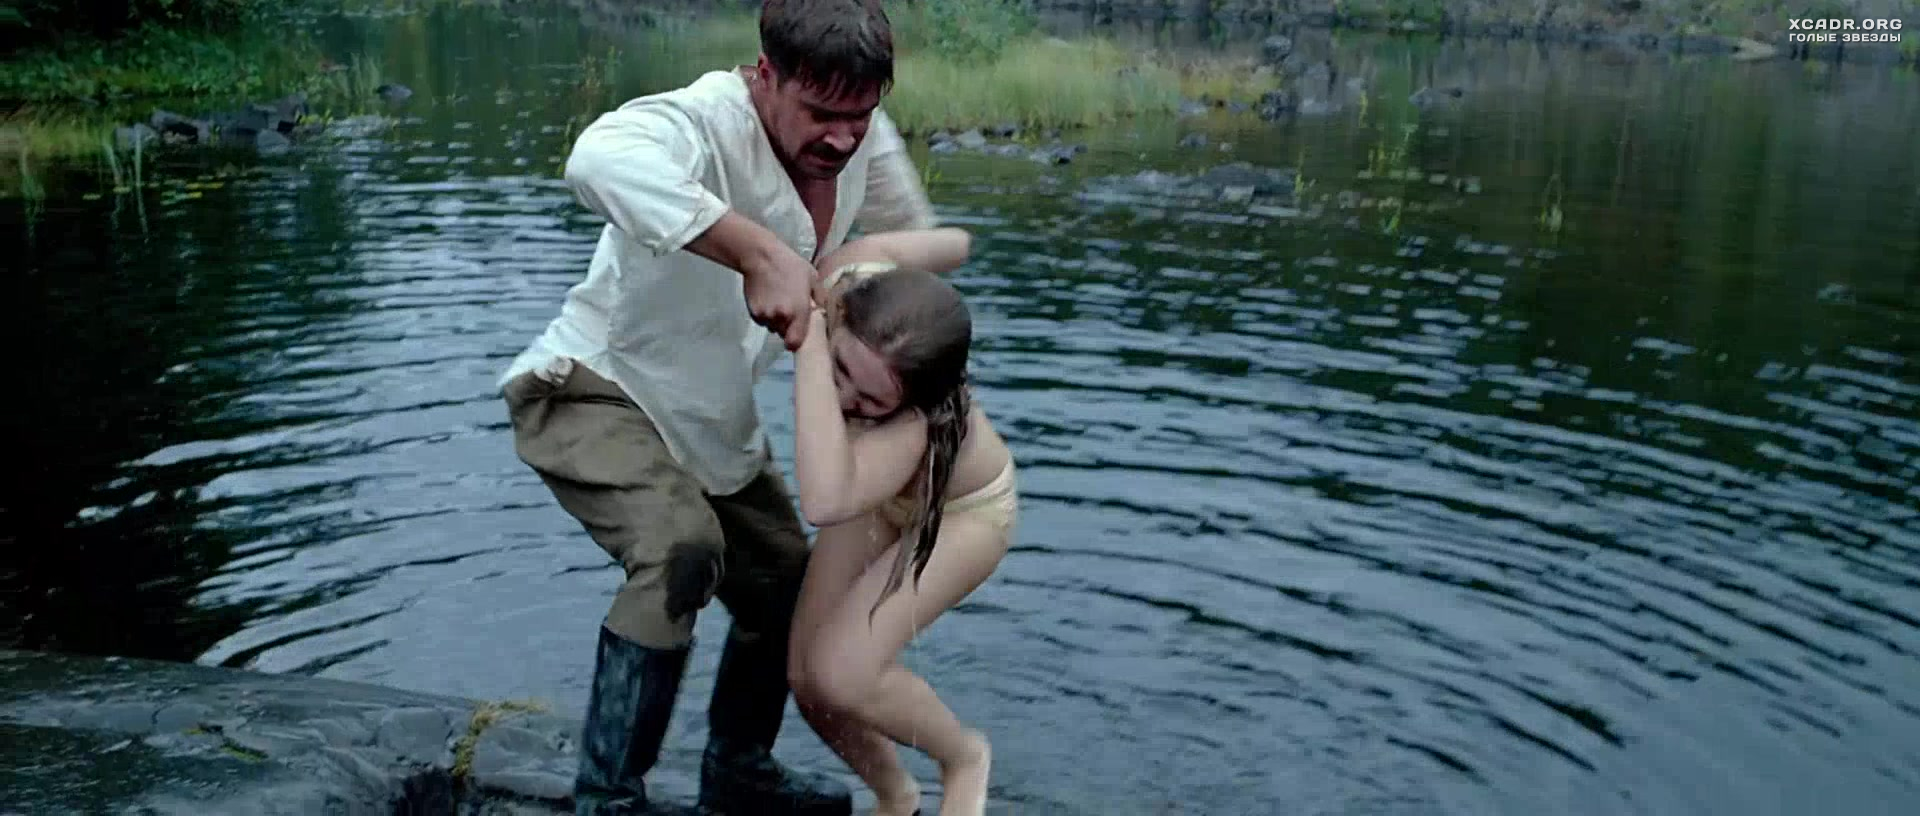 Девки в озере купались - русский порно фильм